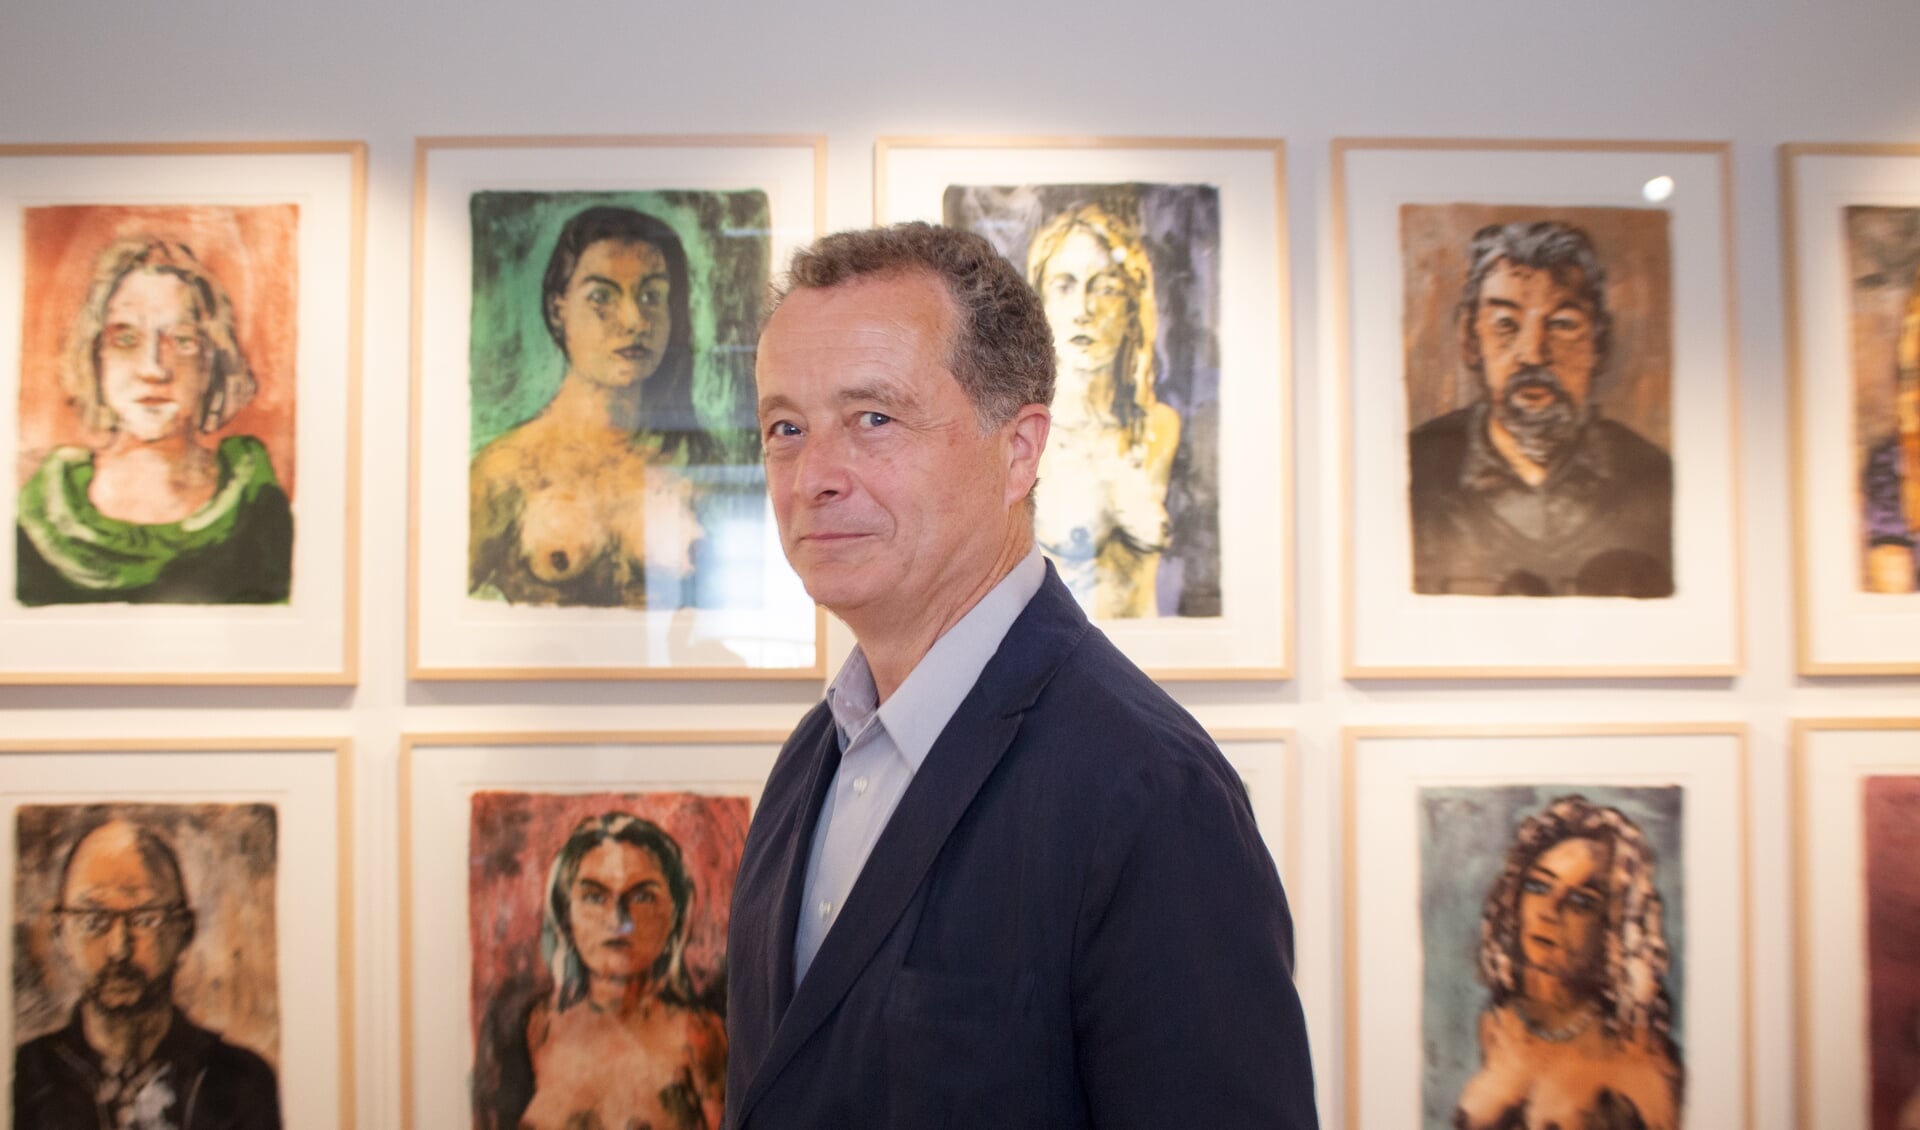 Jeroen Hermkens op de expositie. Linksonder hangt het portret van Paul Schnabel, rechtsboven dat van Maarten van Rossem.